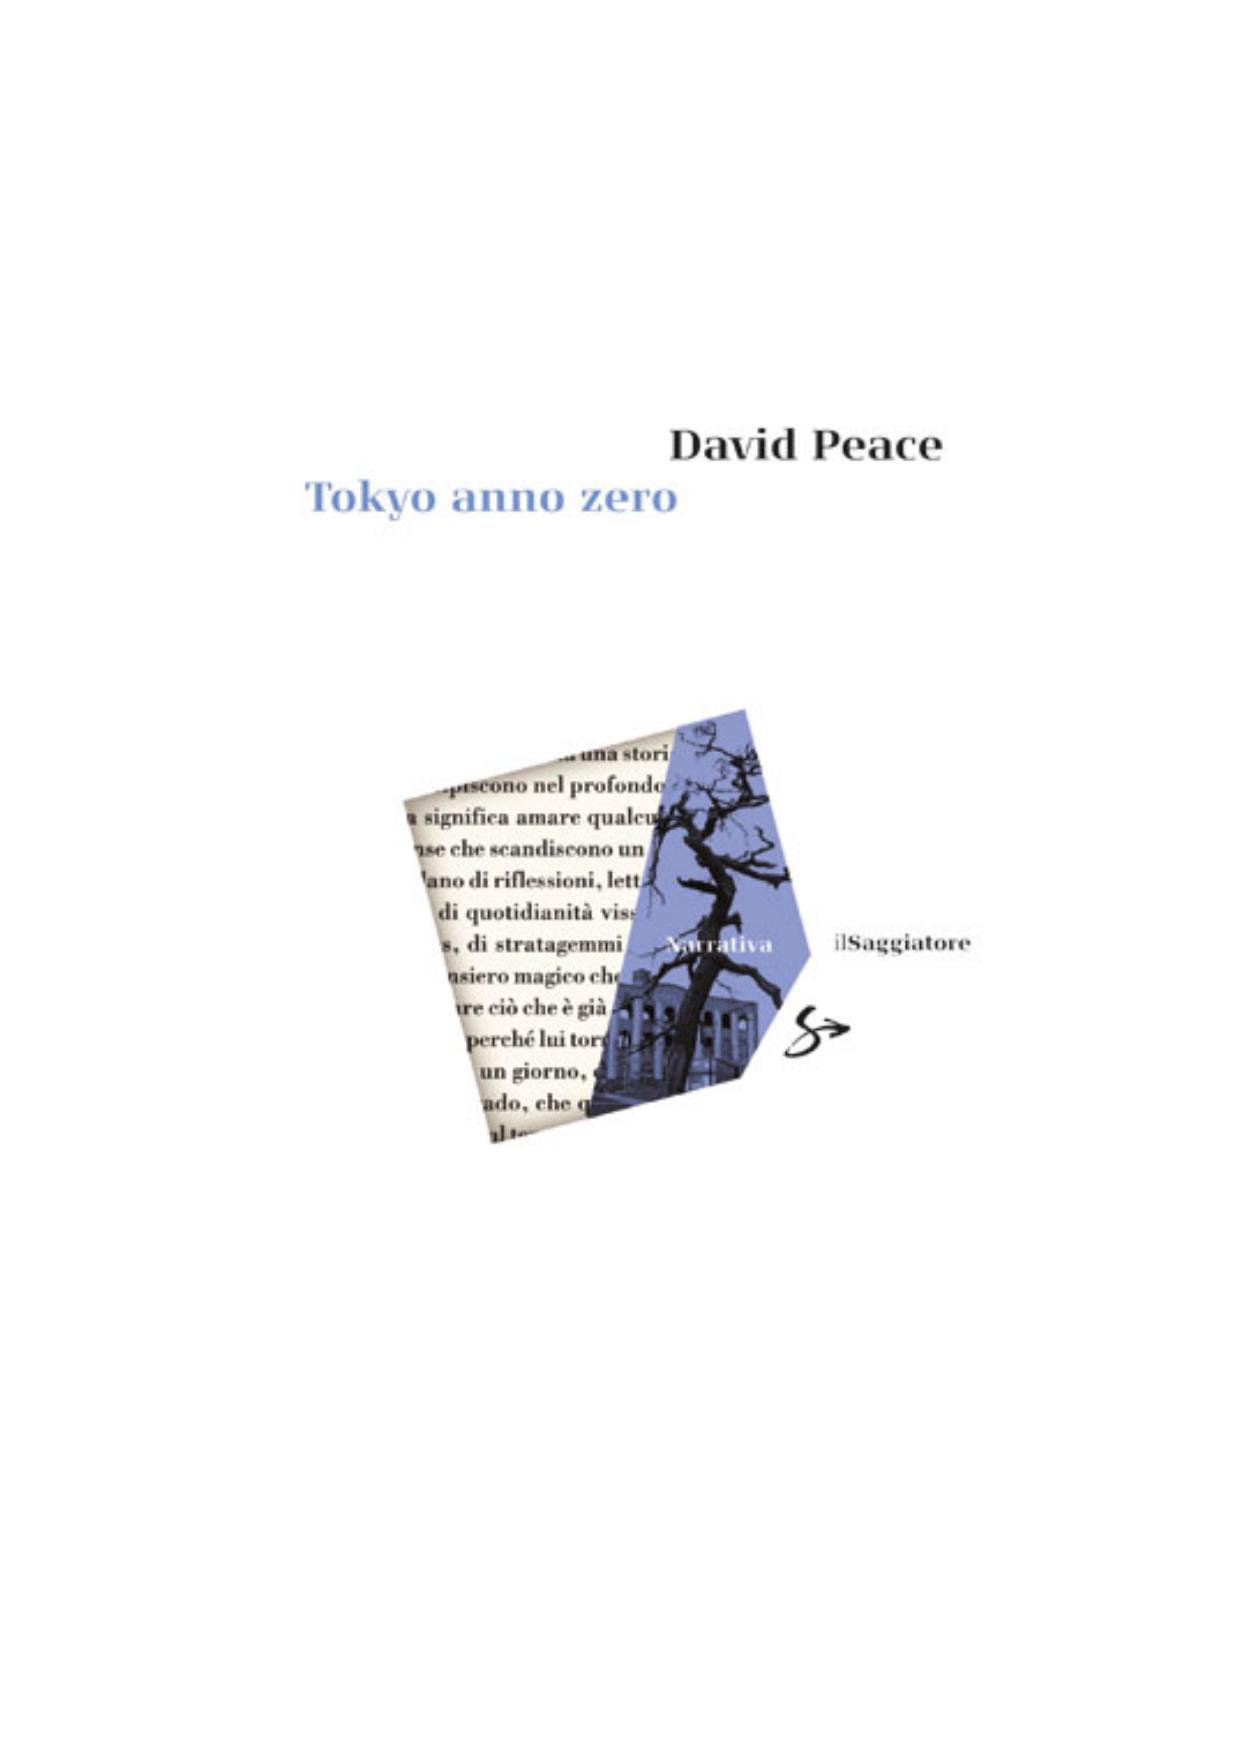 David peace-Tokyo anno zero by UWP